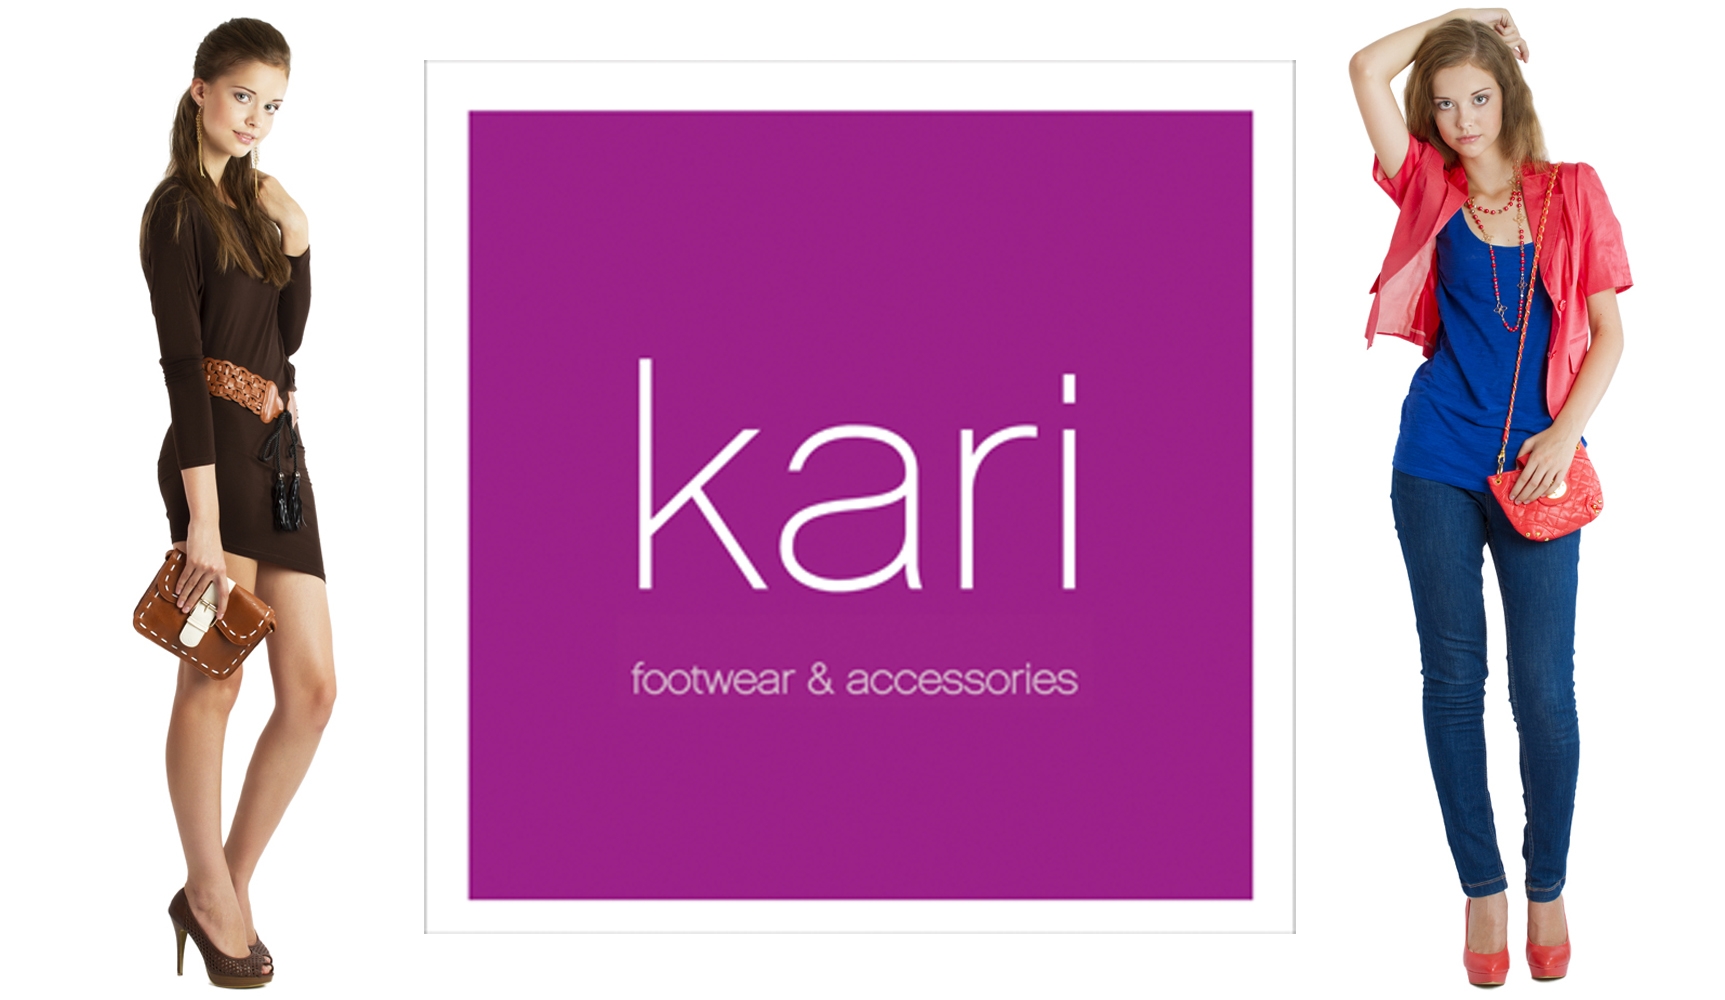 Карри минск. Магазин кари логотип. Kari обувь логотип. Реклама кари обувь. Магазин обуви кари логотип.